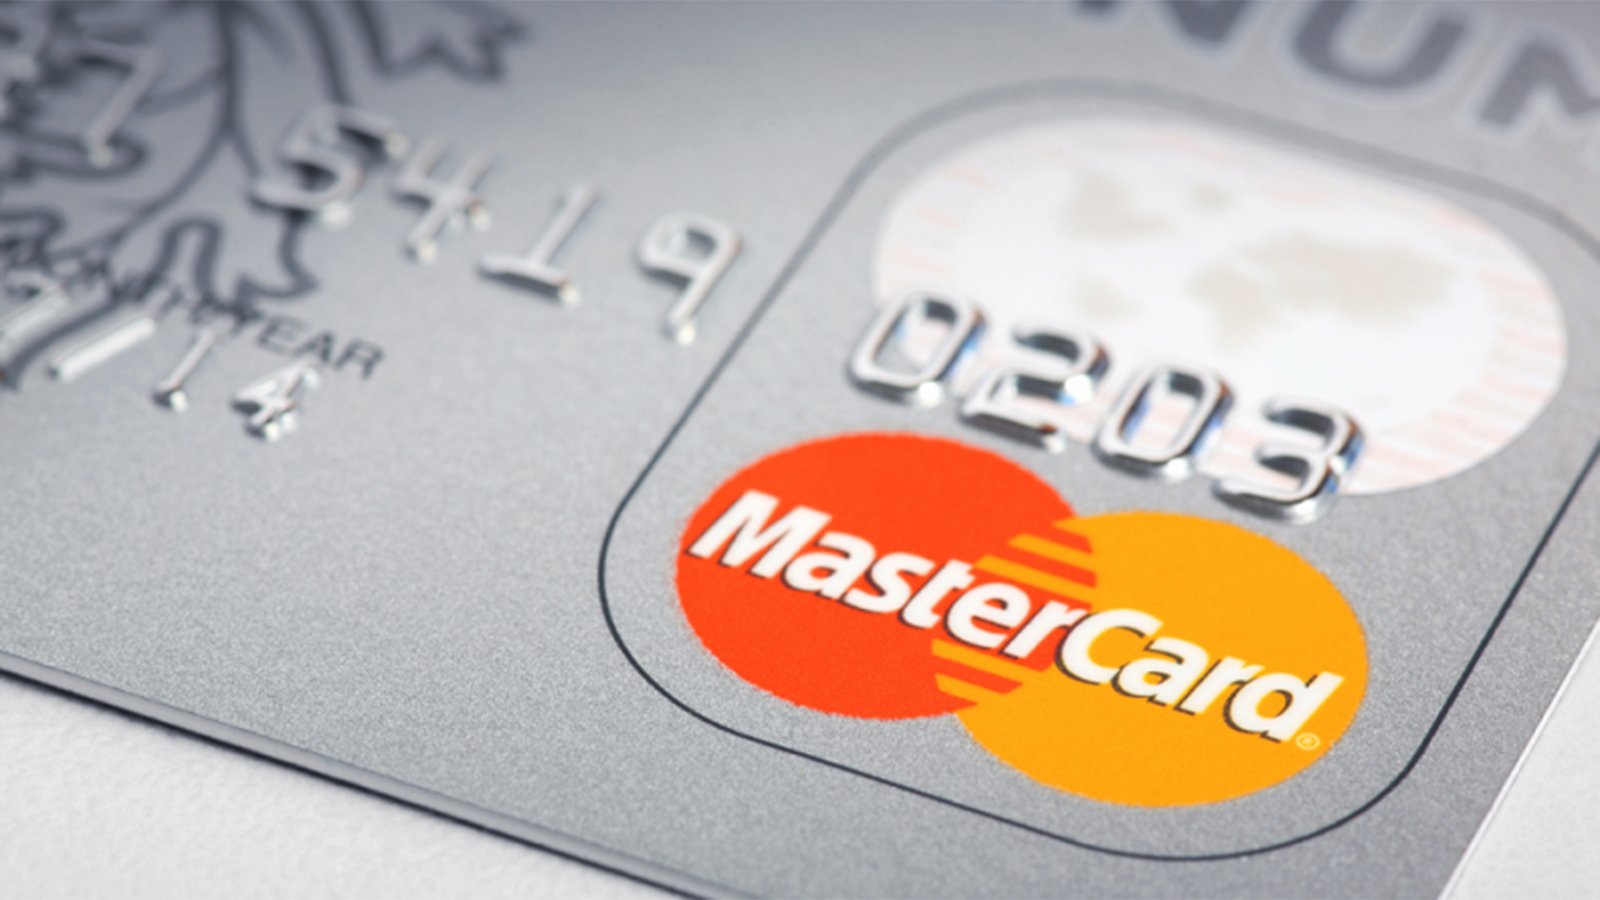 Tosifret milliardavtale mellom Nets og Mastercard